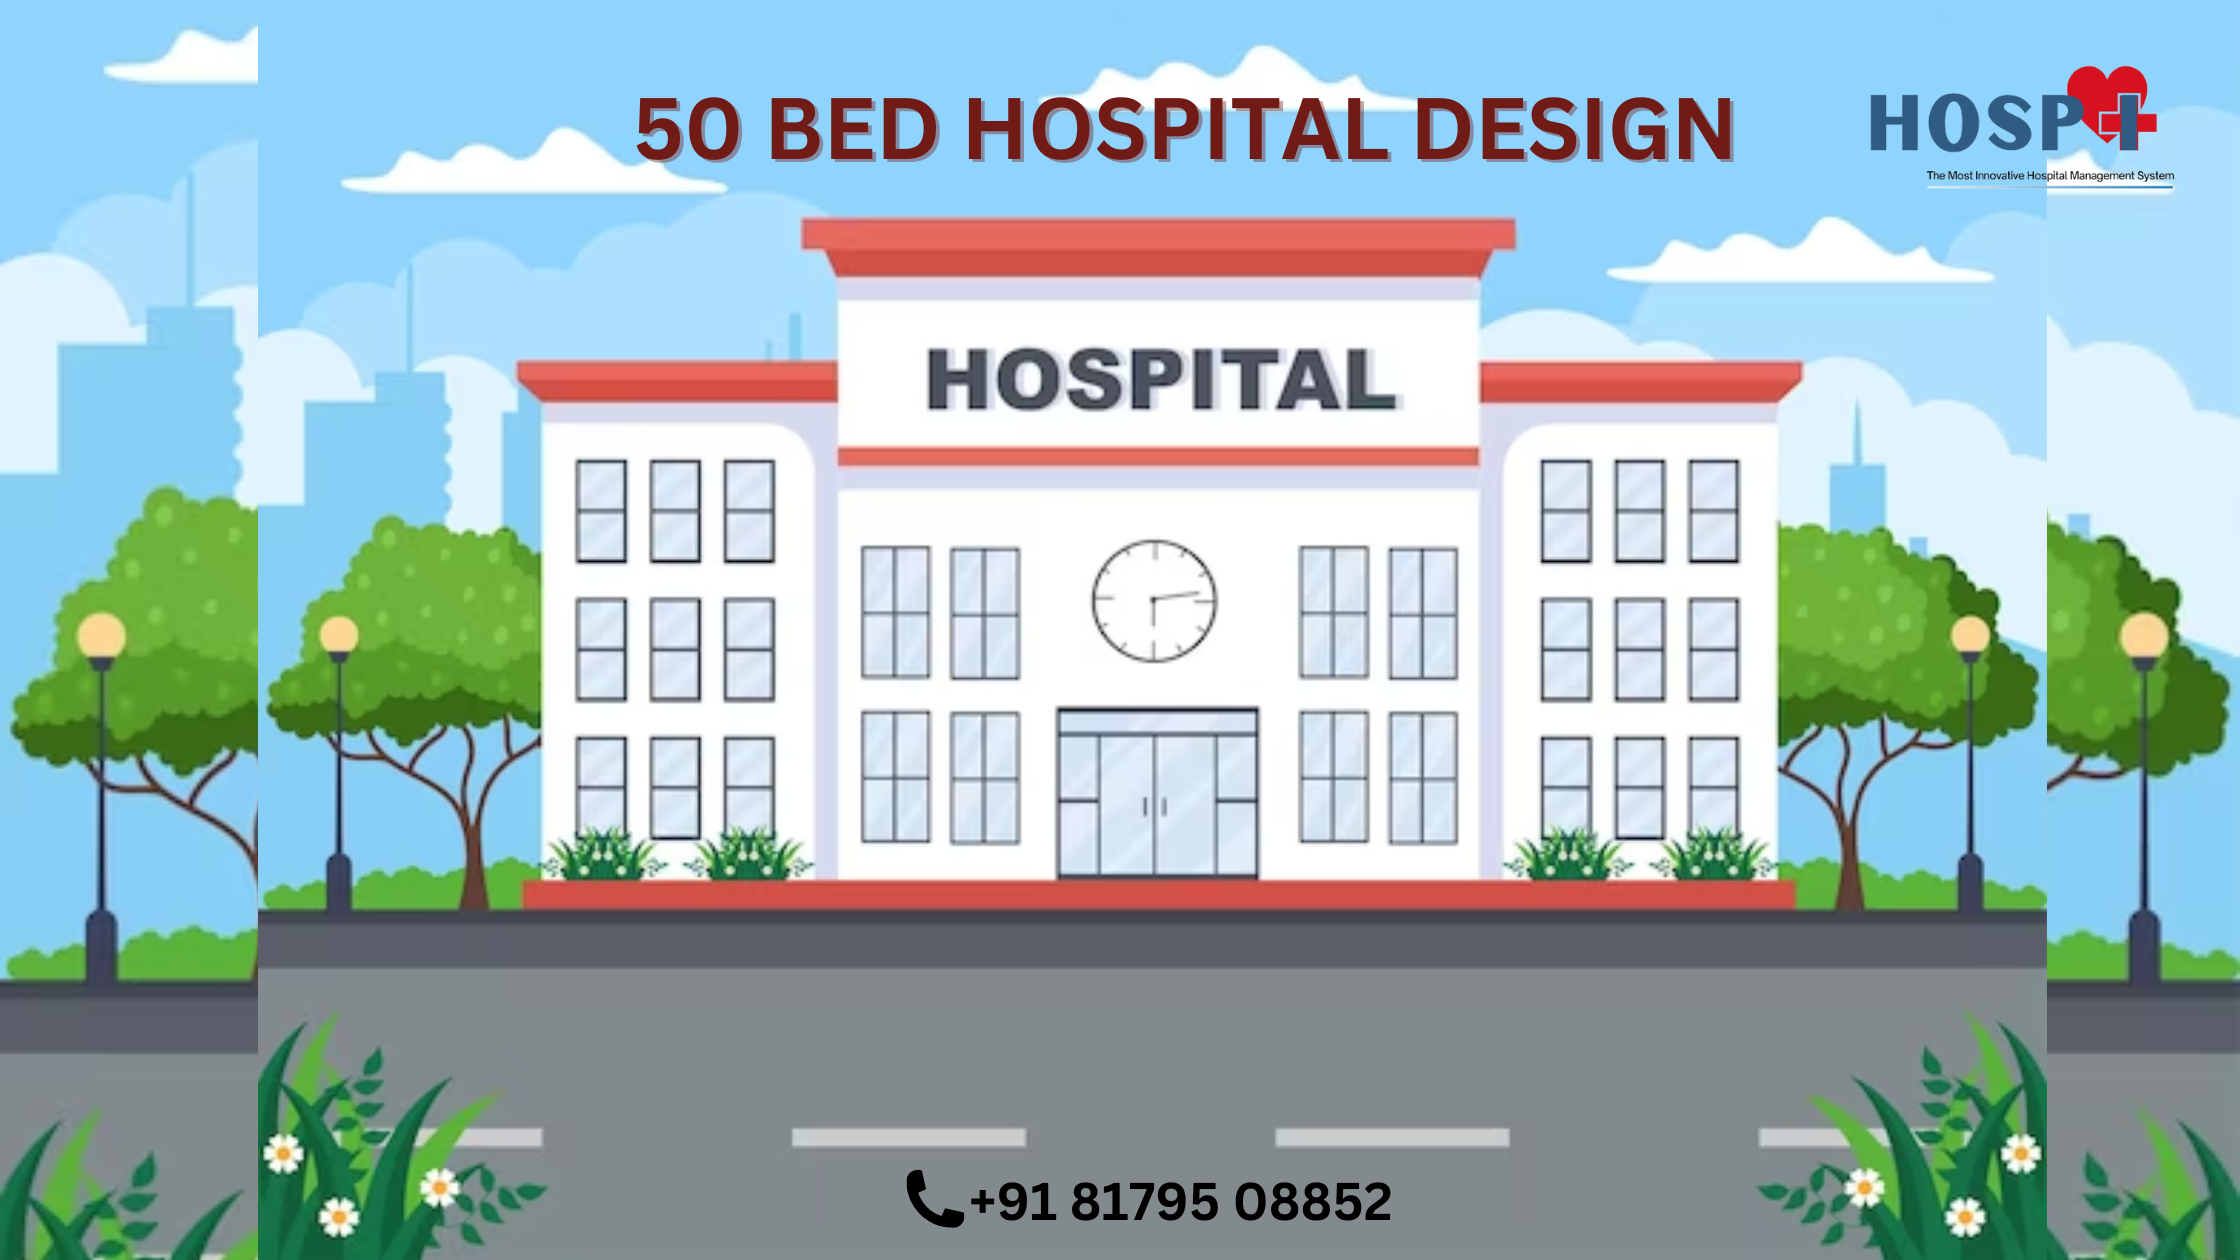 50 bed hospital design